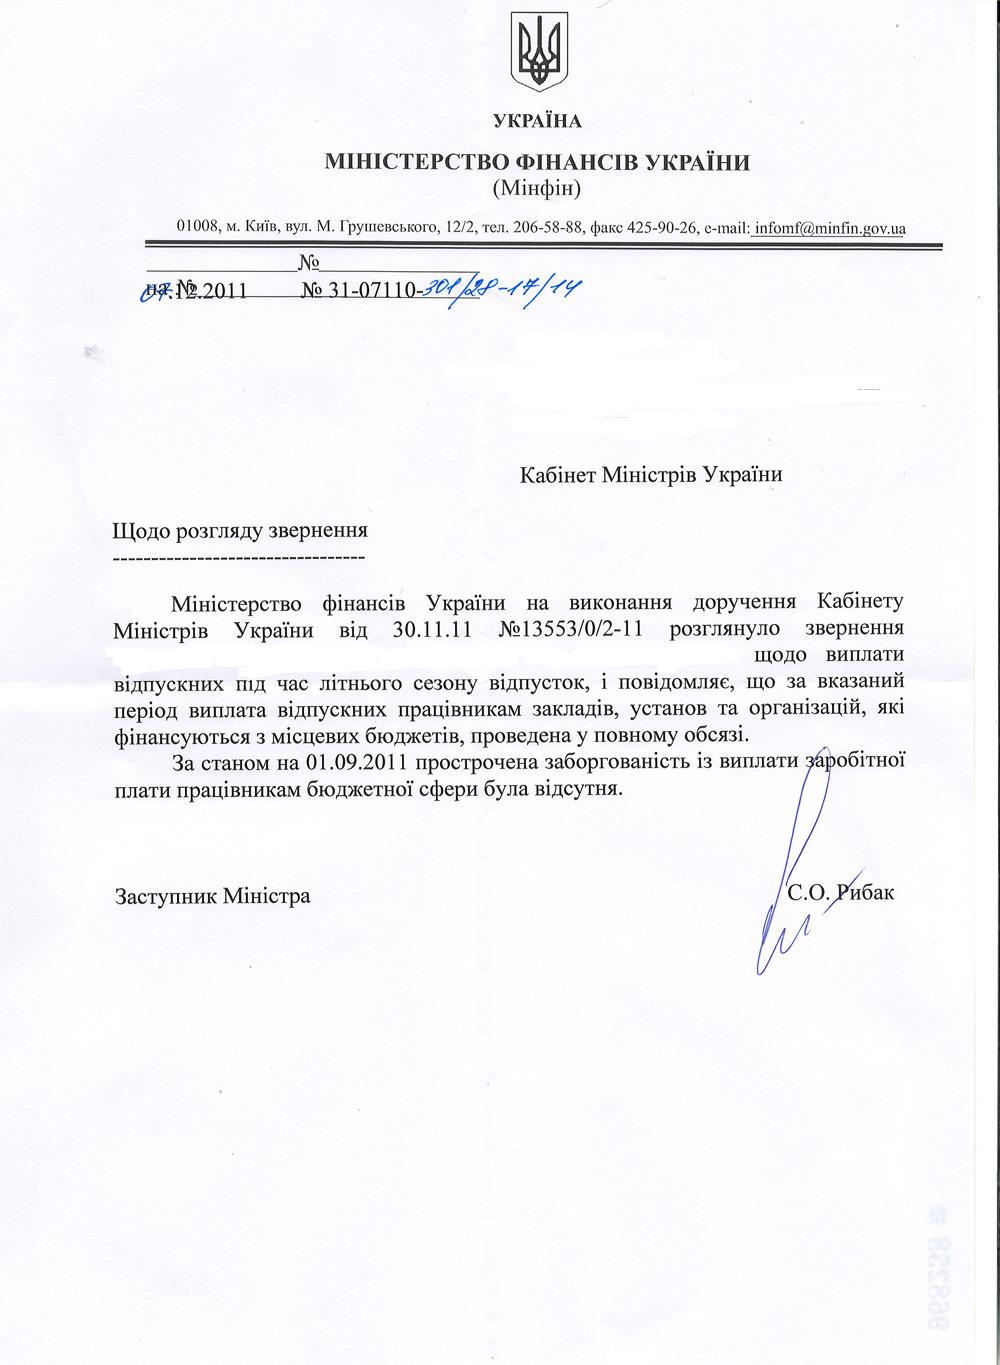 Письмо заместителя Министра финансов Украины С. Рыбака